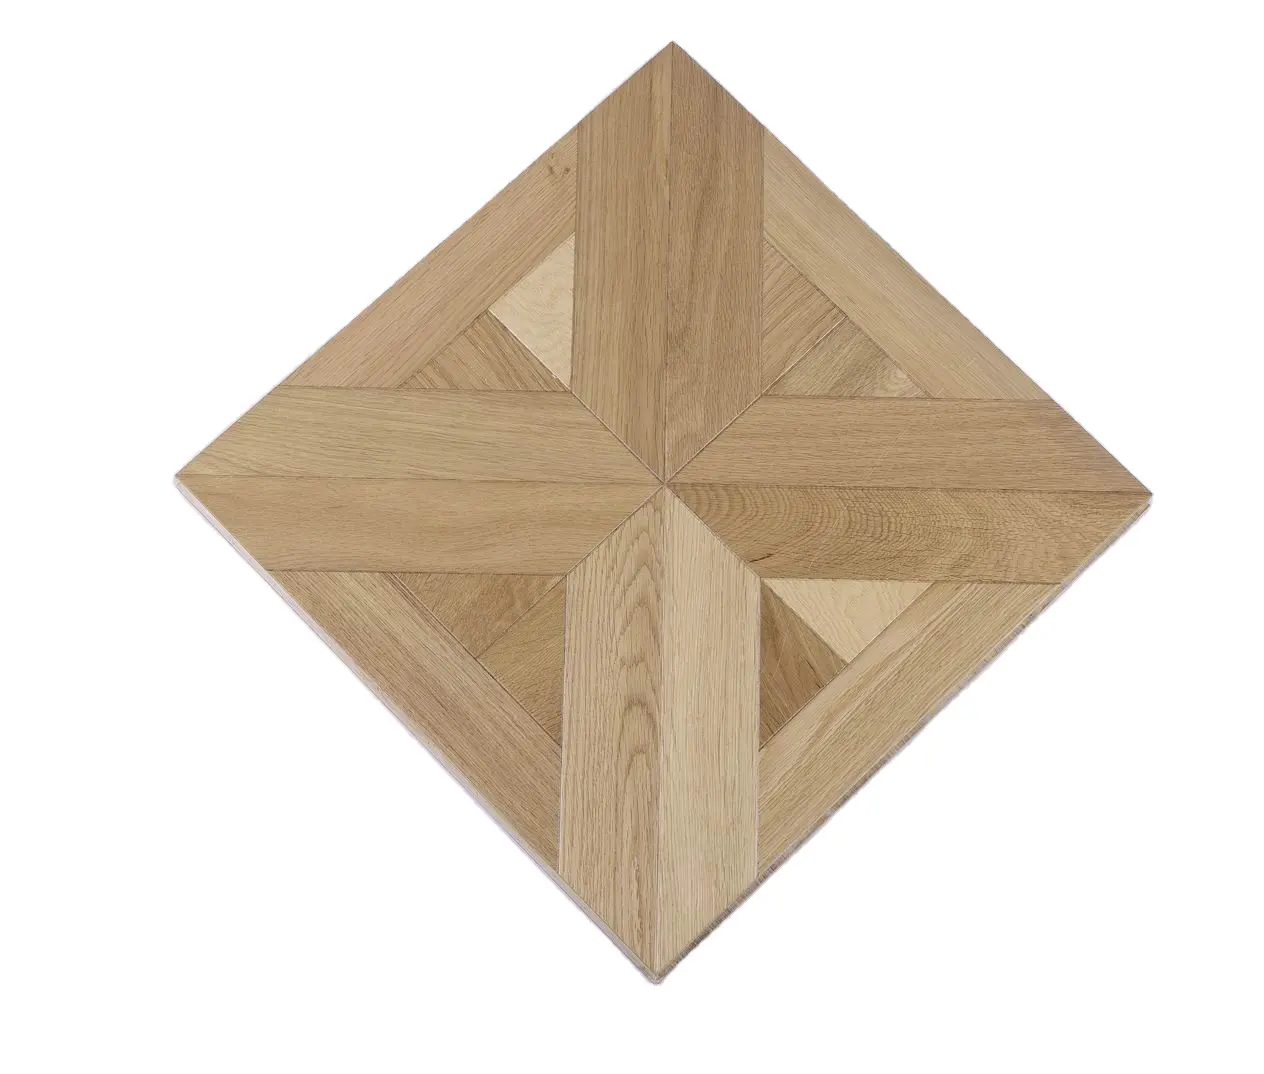 Parquet rovere spazzolato colore naturale parquet in legno ingegneria pavimenti in legno pavimenti in legno duro legno massello di quercia